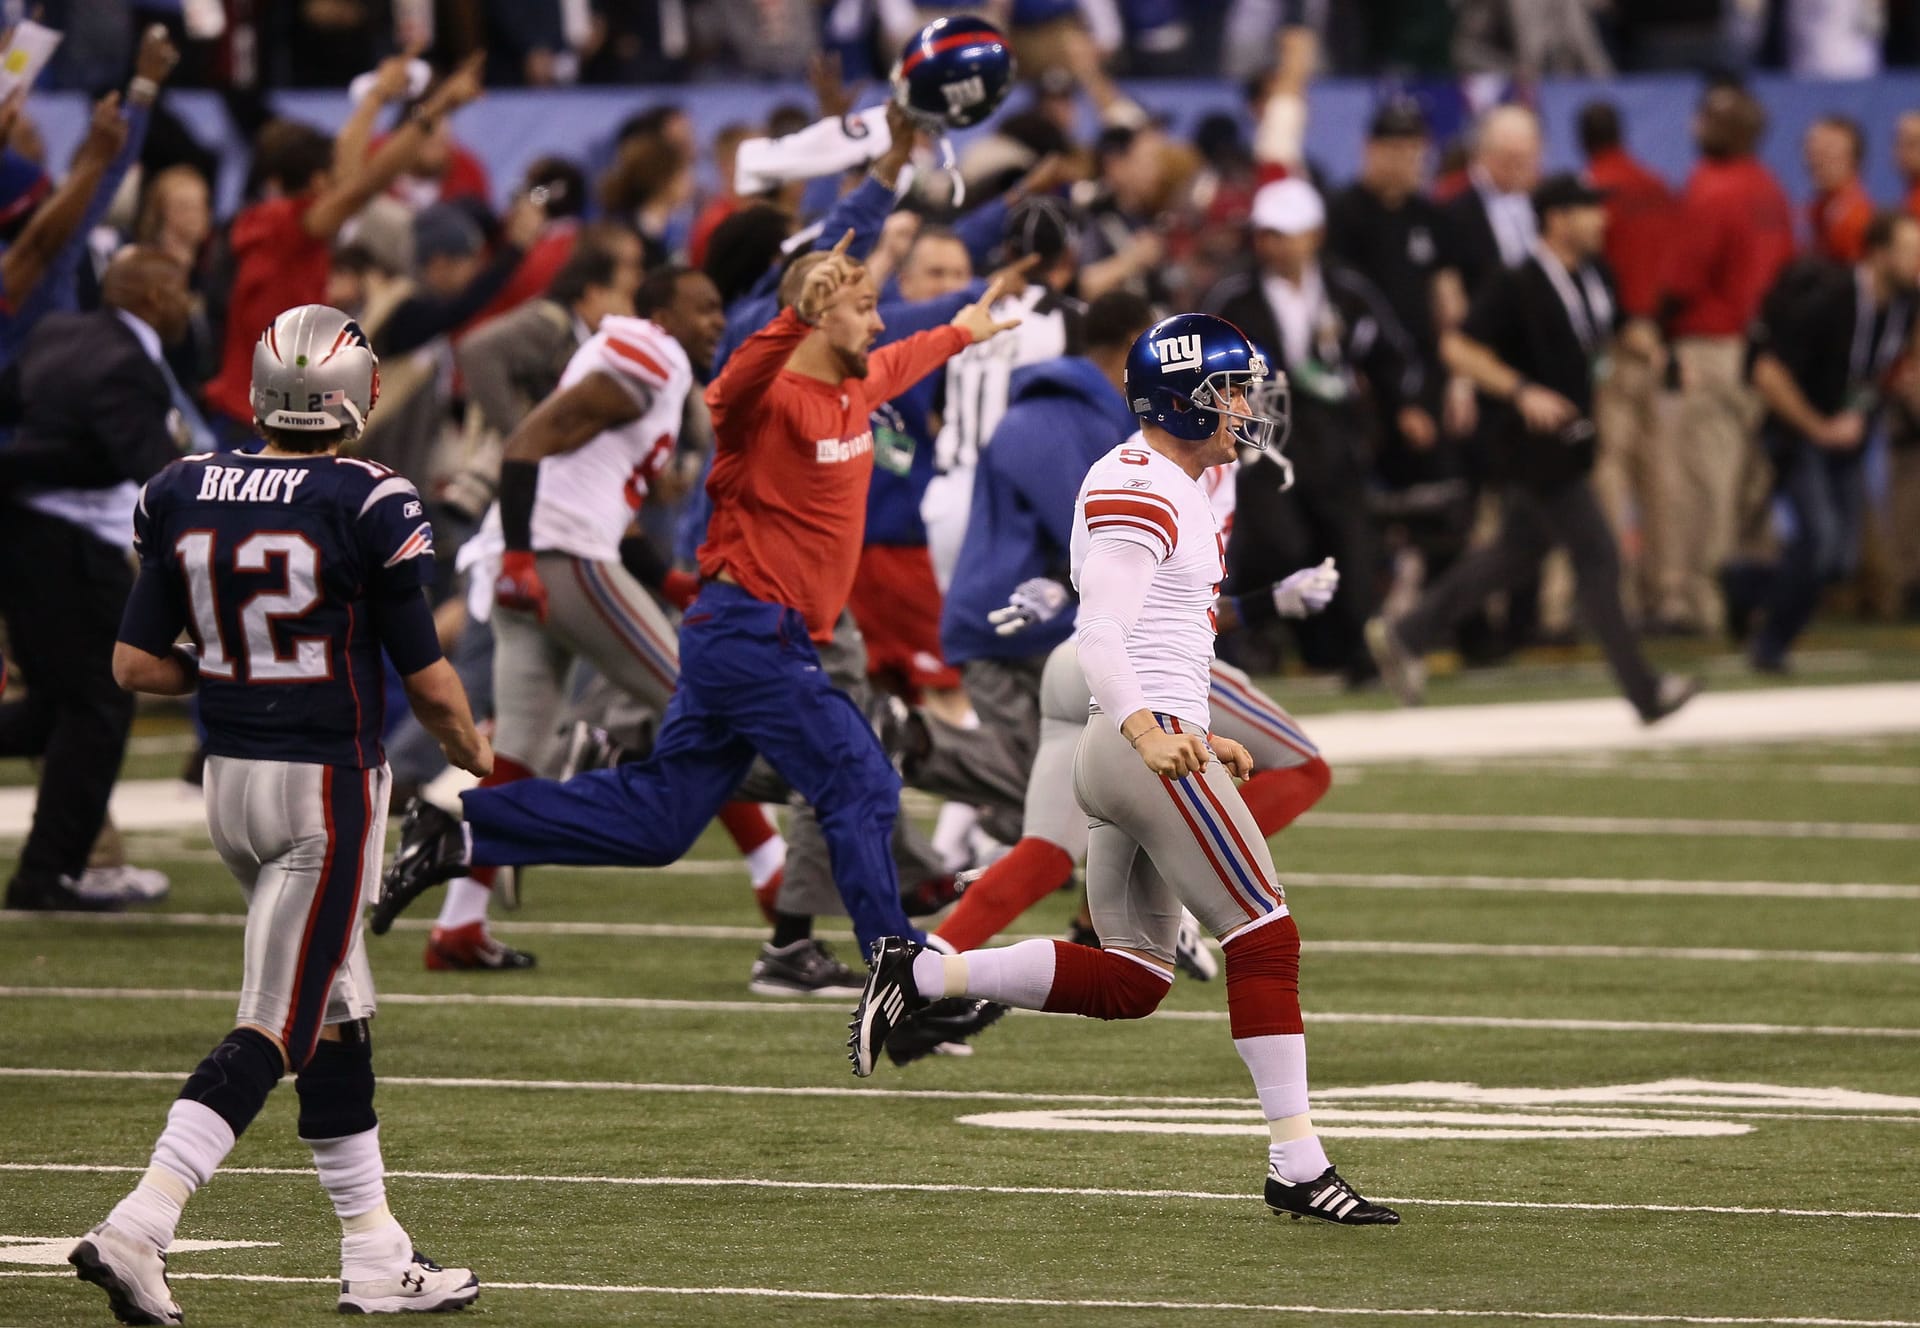 Eine Chance auf Revange erhielt Brady im Super Bowl der Saison 2011. Erneut hieß die Begegnung New England Patriots gegen New York Giants – doch erneut zogen die Patriots den Kürzeren. 17:21 hieß es am Ende.